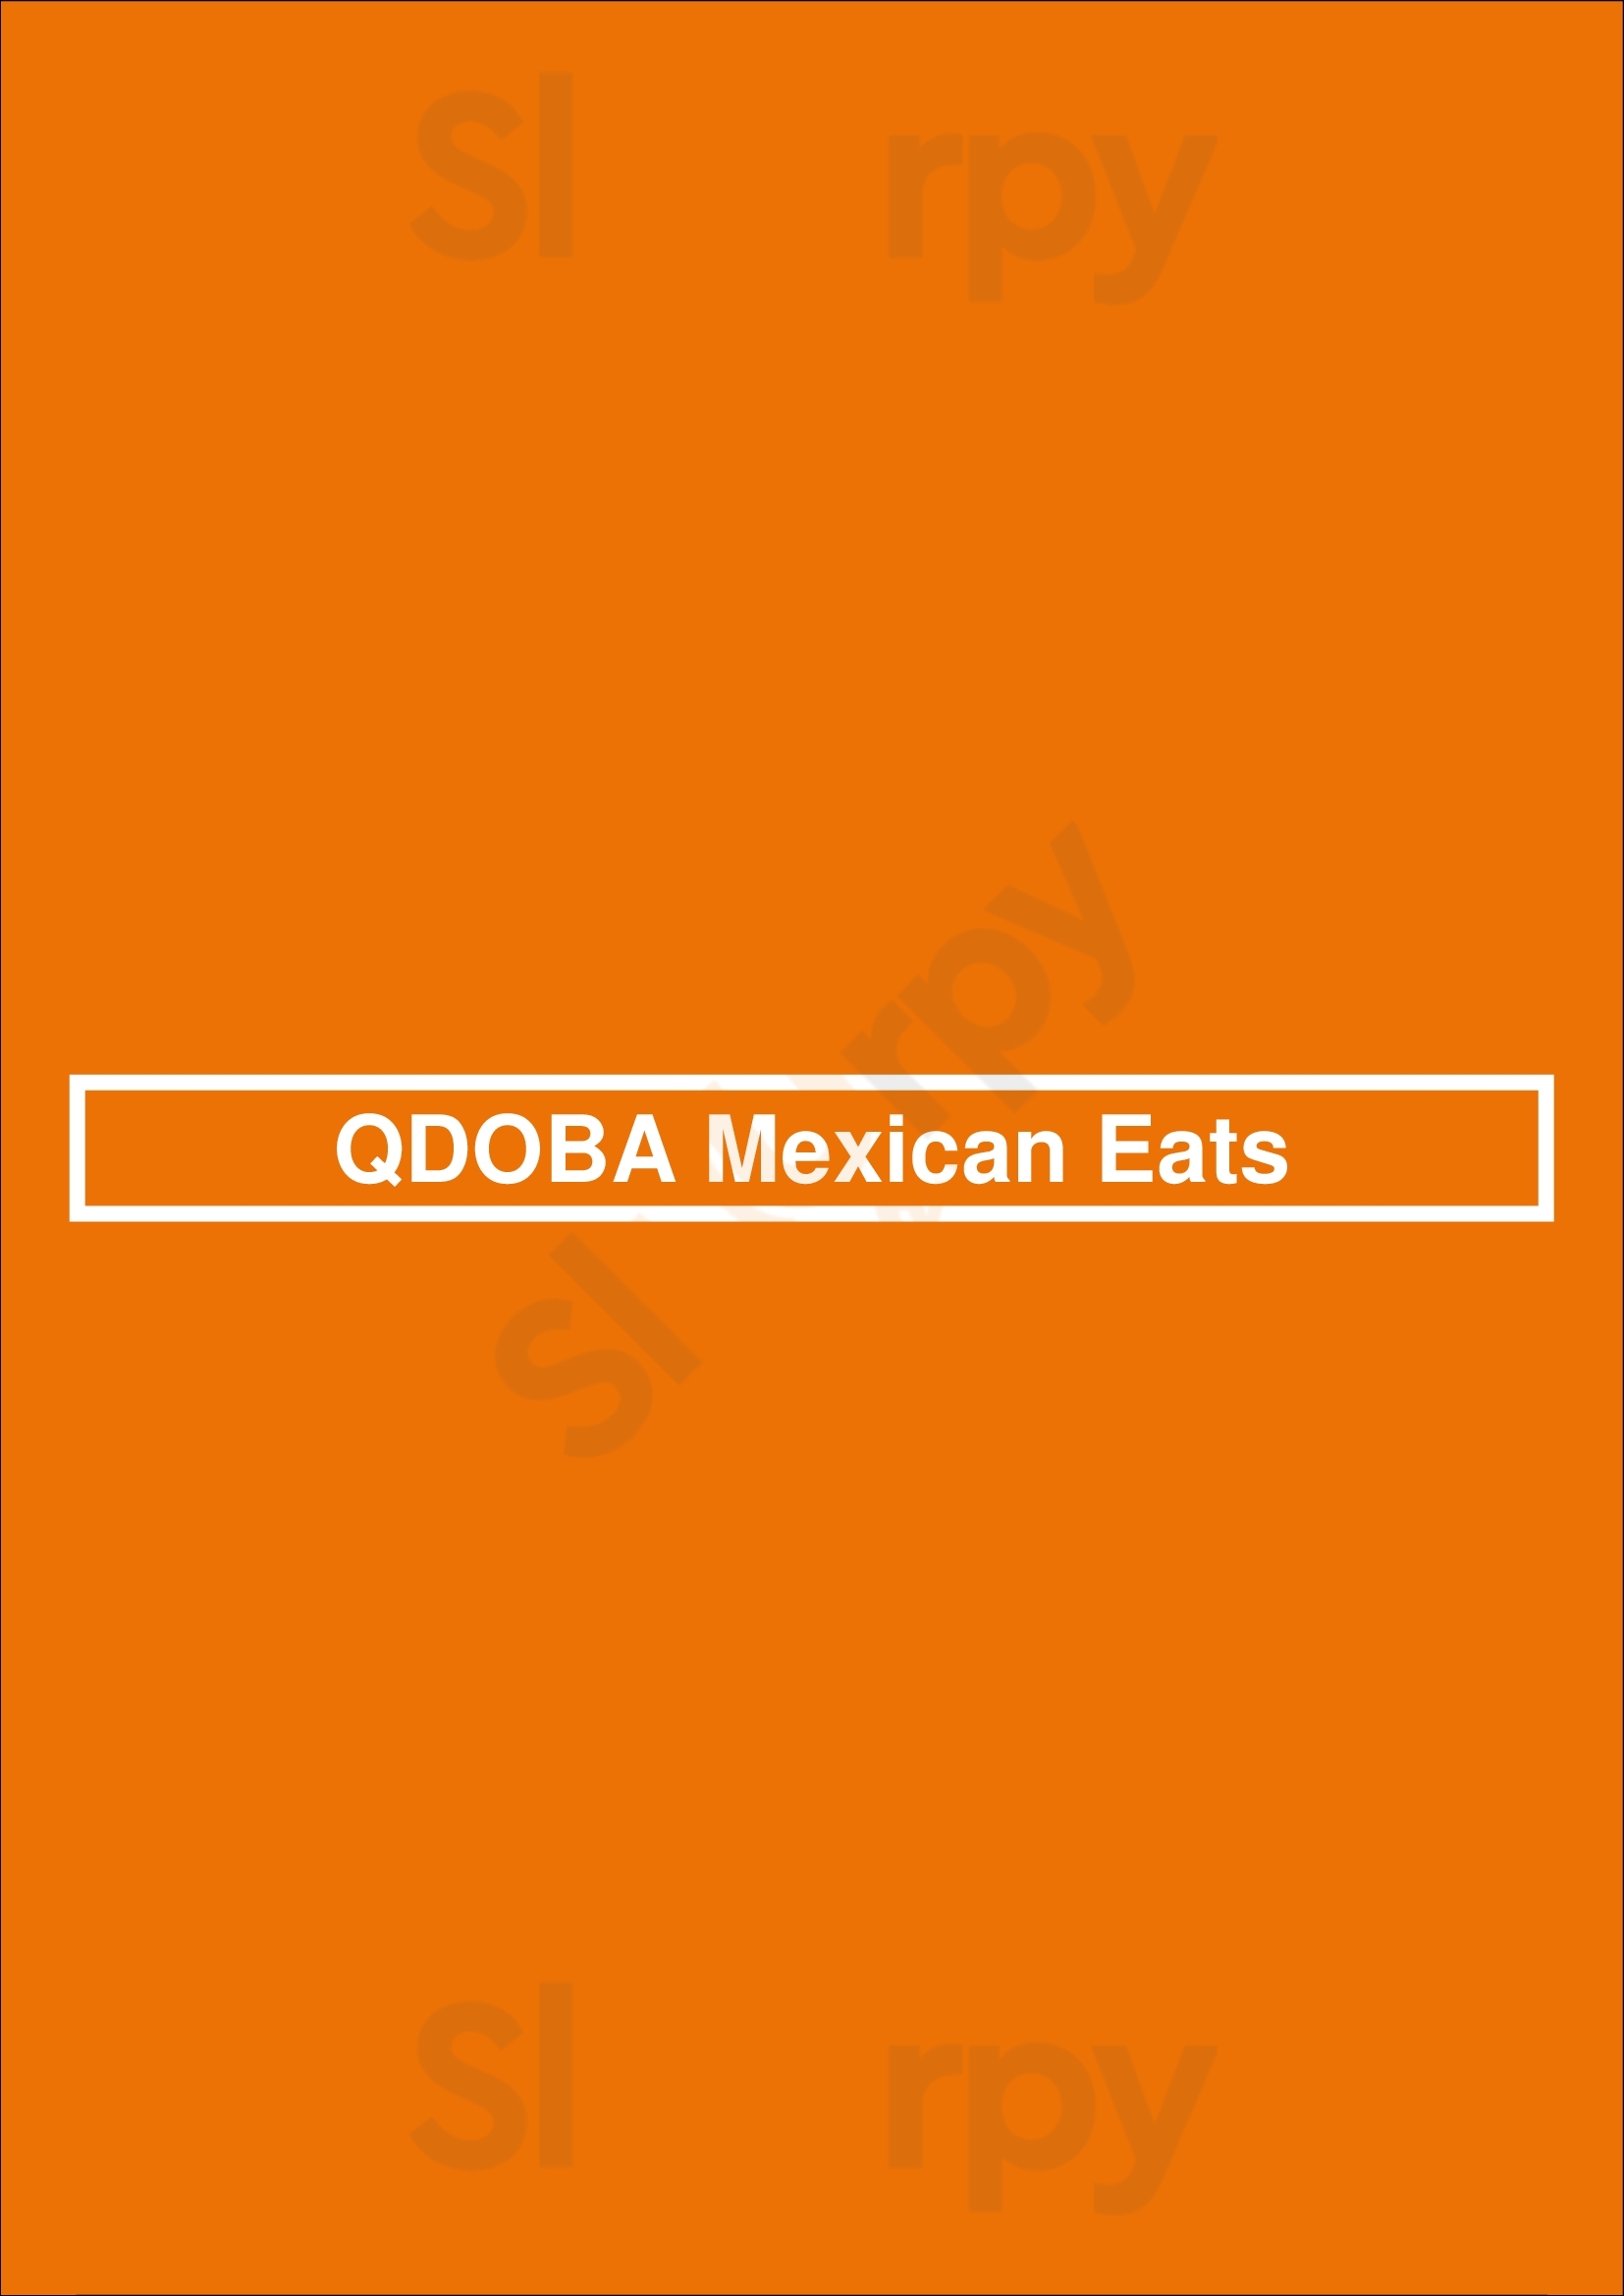 Qdoba Mexican Eats Colorado Springs Menu - 1